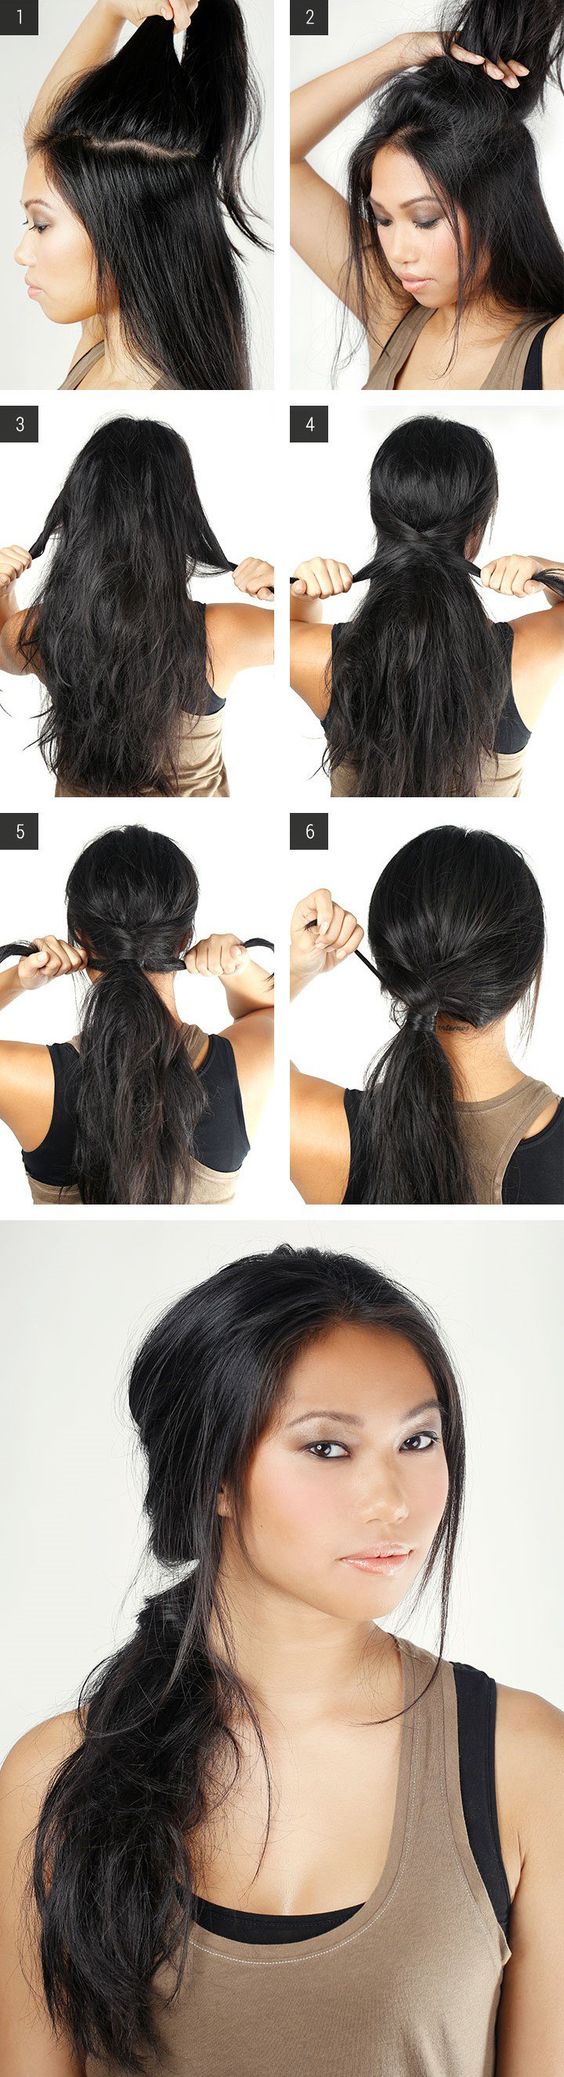 Comment cacher un elastique avec ses cheveux